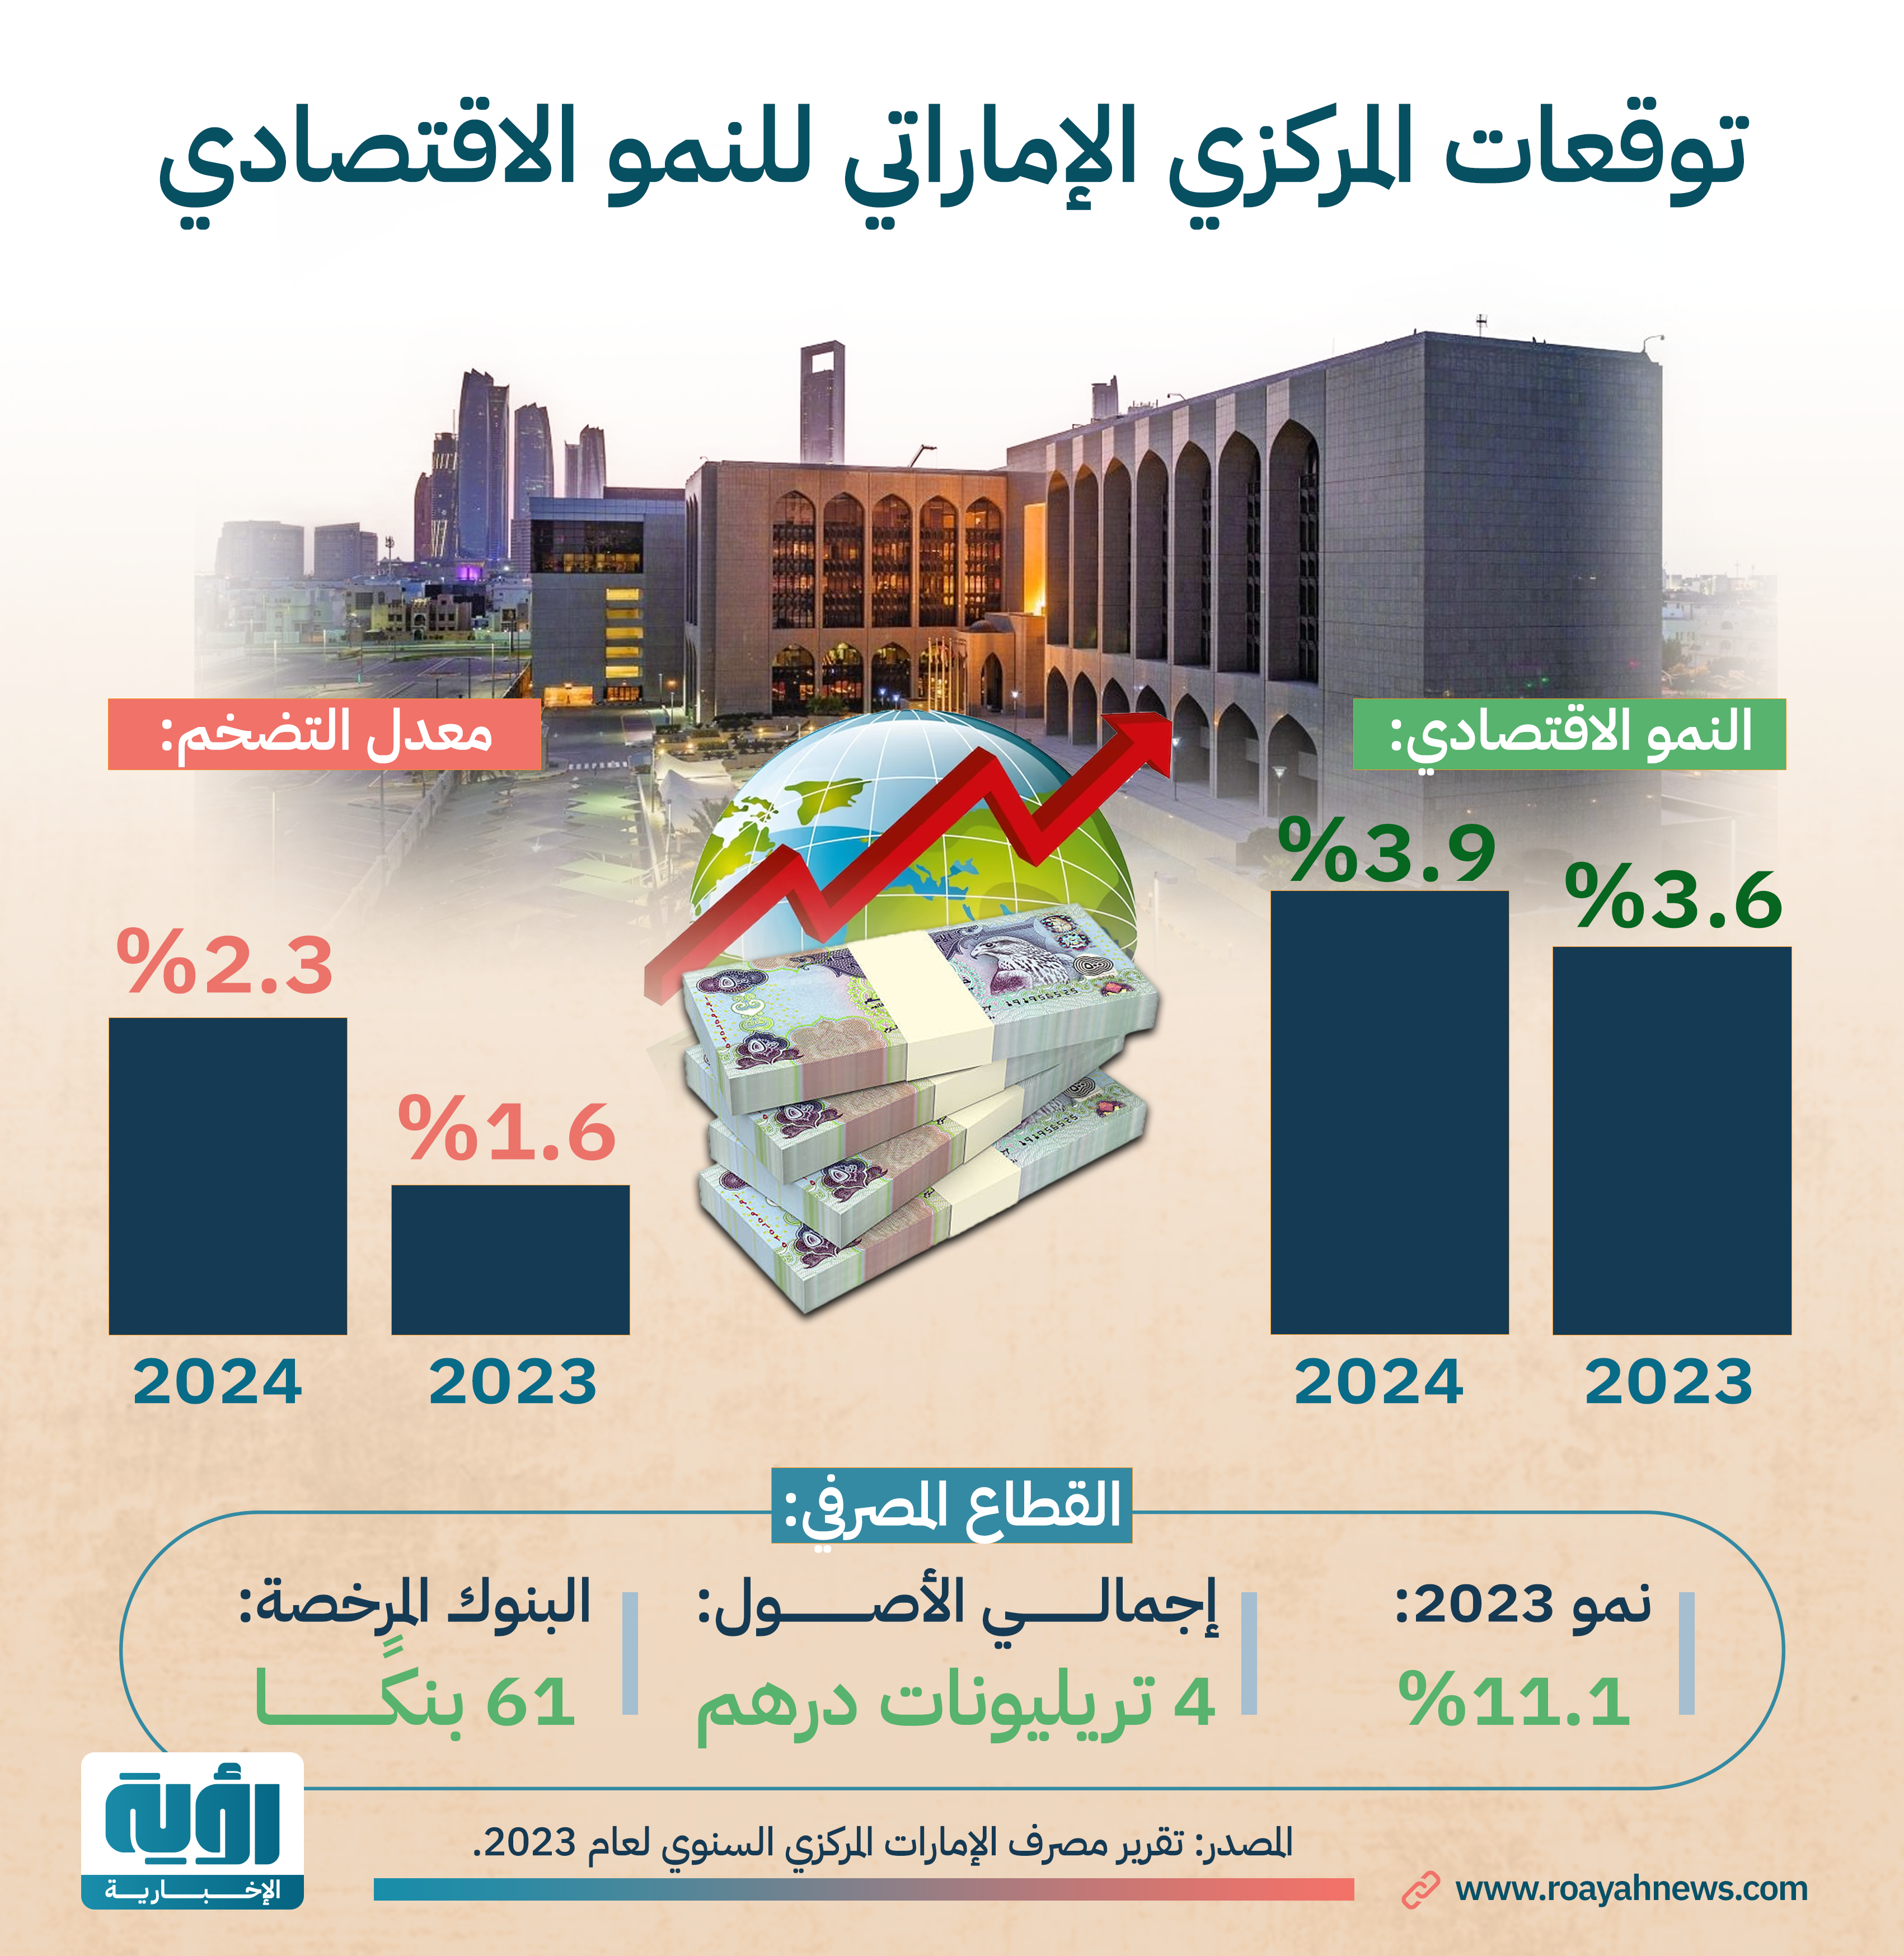 توقعات المركزي الإماراتي للنمو الاقتصادي